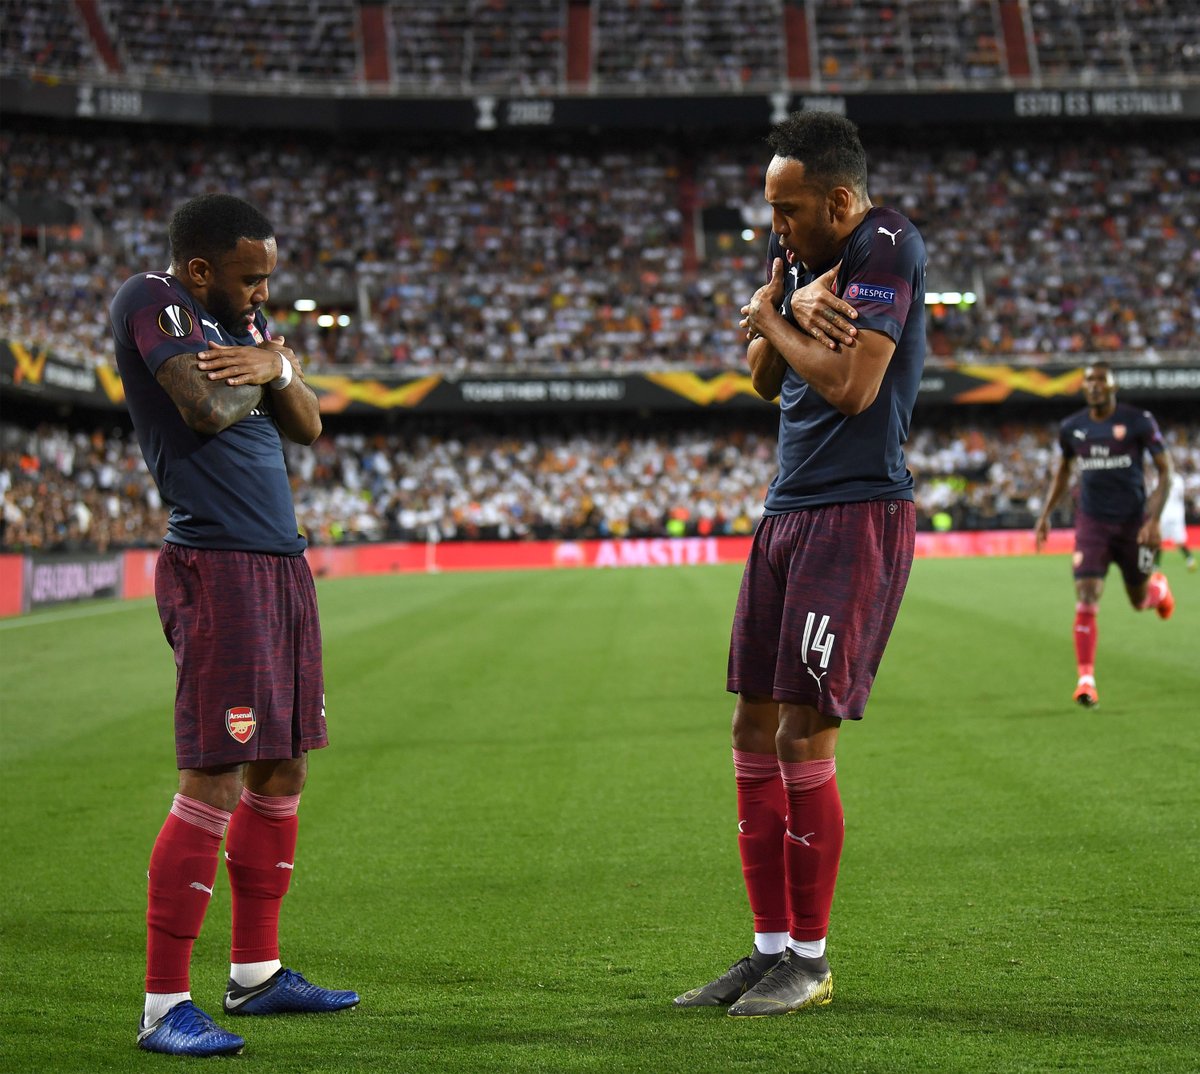 Europa League - L'Arsenal vola in finale: battuto il Valencia 2-4